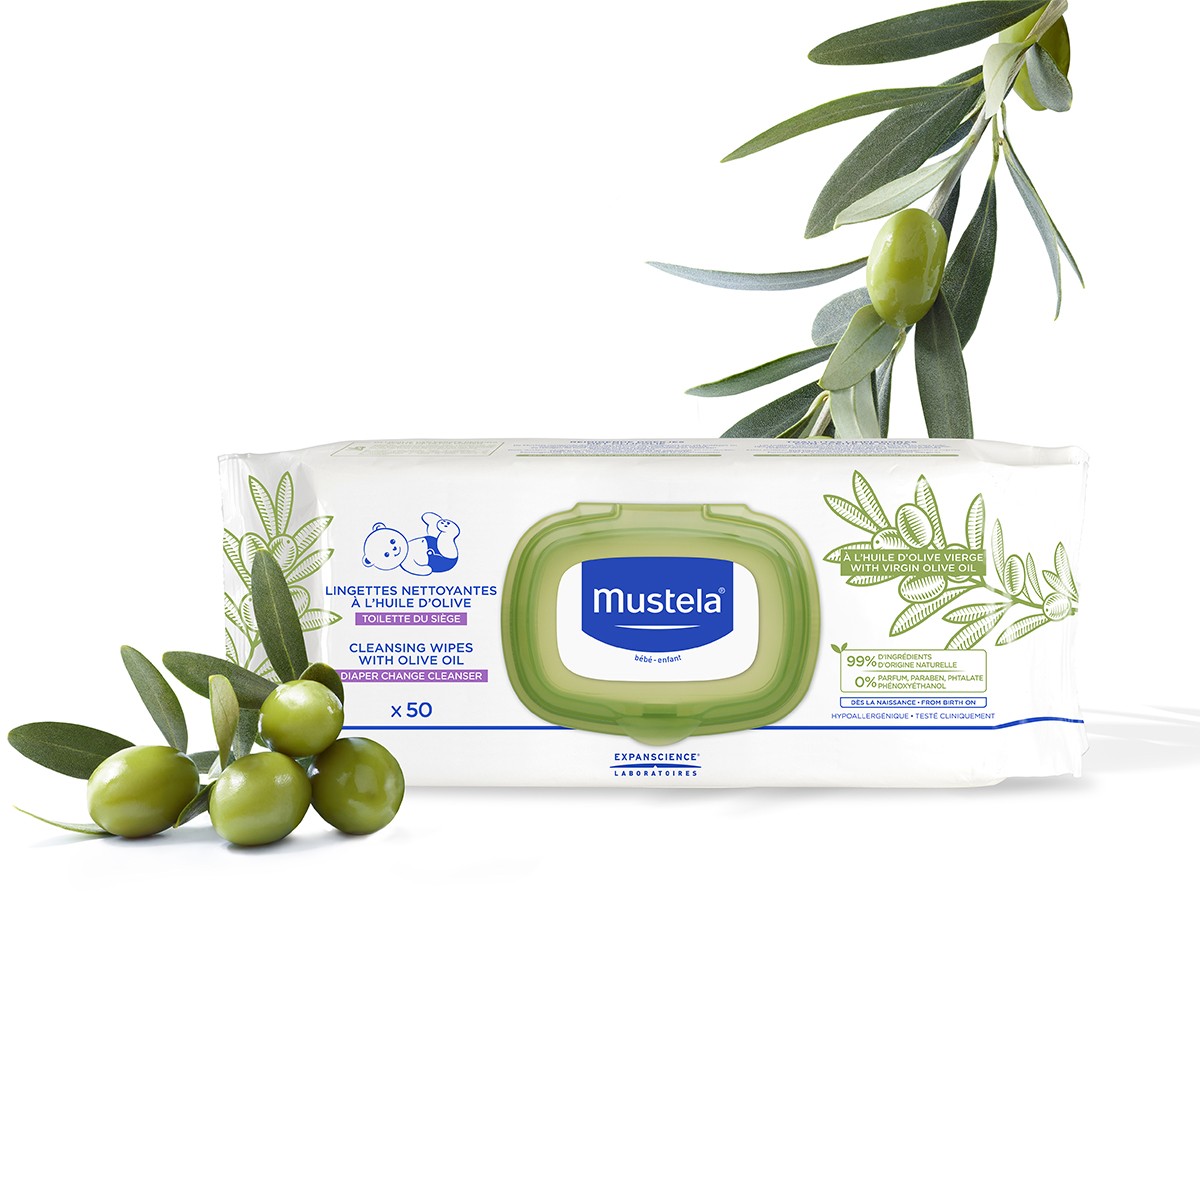 Mustela LLingettes nettoyantes bébé à l'huile d'olive